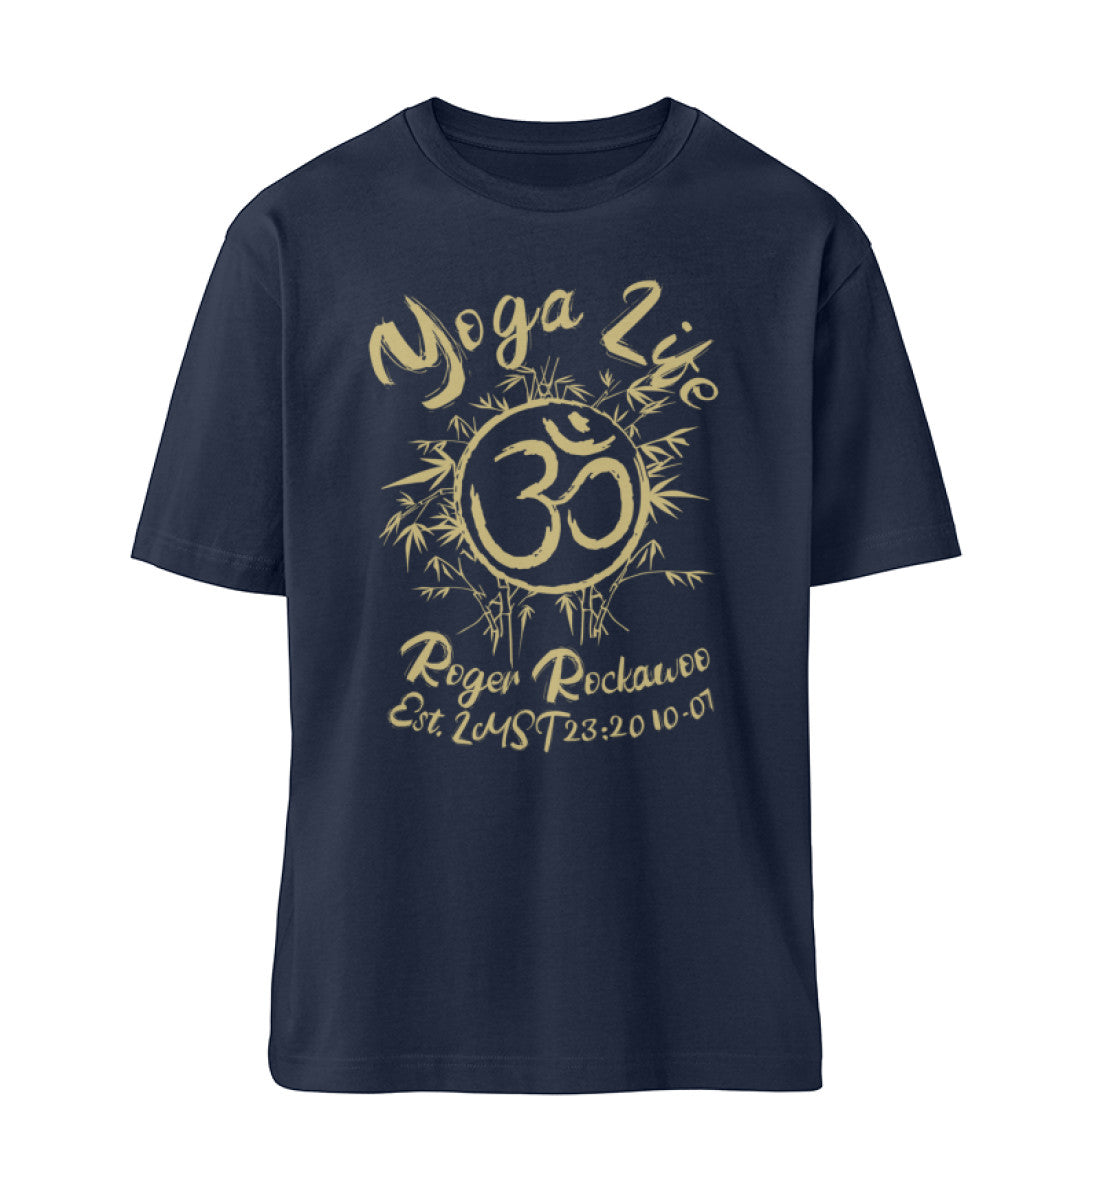 French Navy Blue T-Shirt Unisex für Damen und Herren im Relaxed Fit bedruckt mit dem Design der Yoga Life Kollektion von Roger Rockawoo